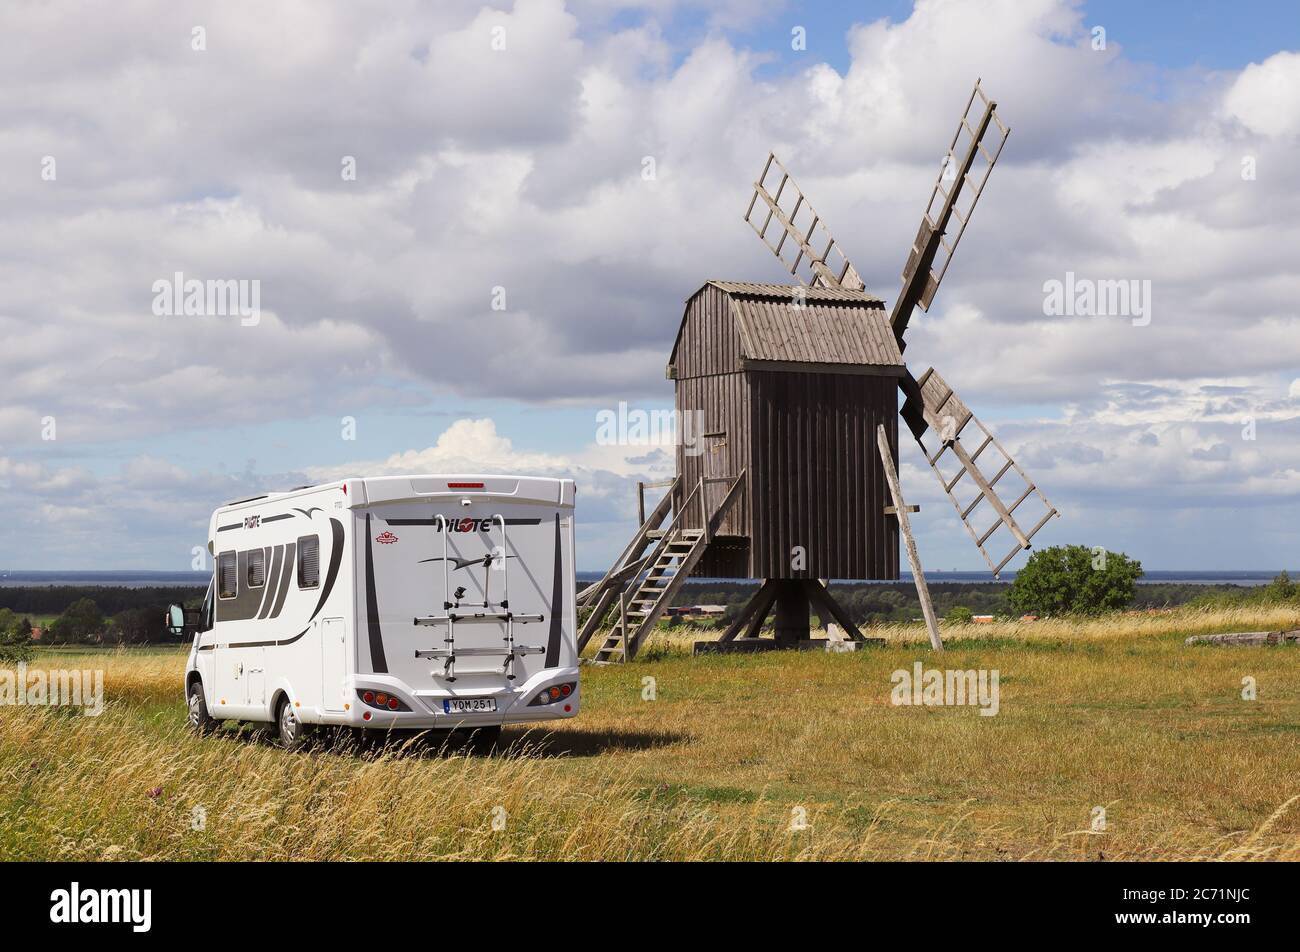 Farjestaden, Svezia - 7 luglio 2020: Camper parcheggiato vicino a un vecchio mulino a vento nella provincia svedese di Oland. Foto Stock